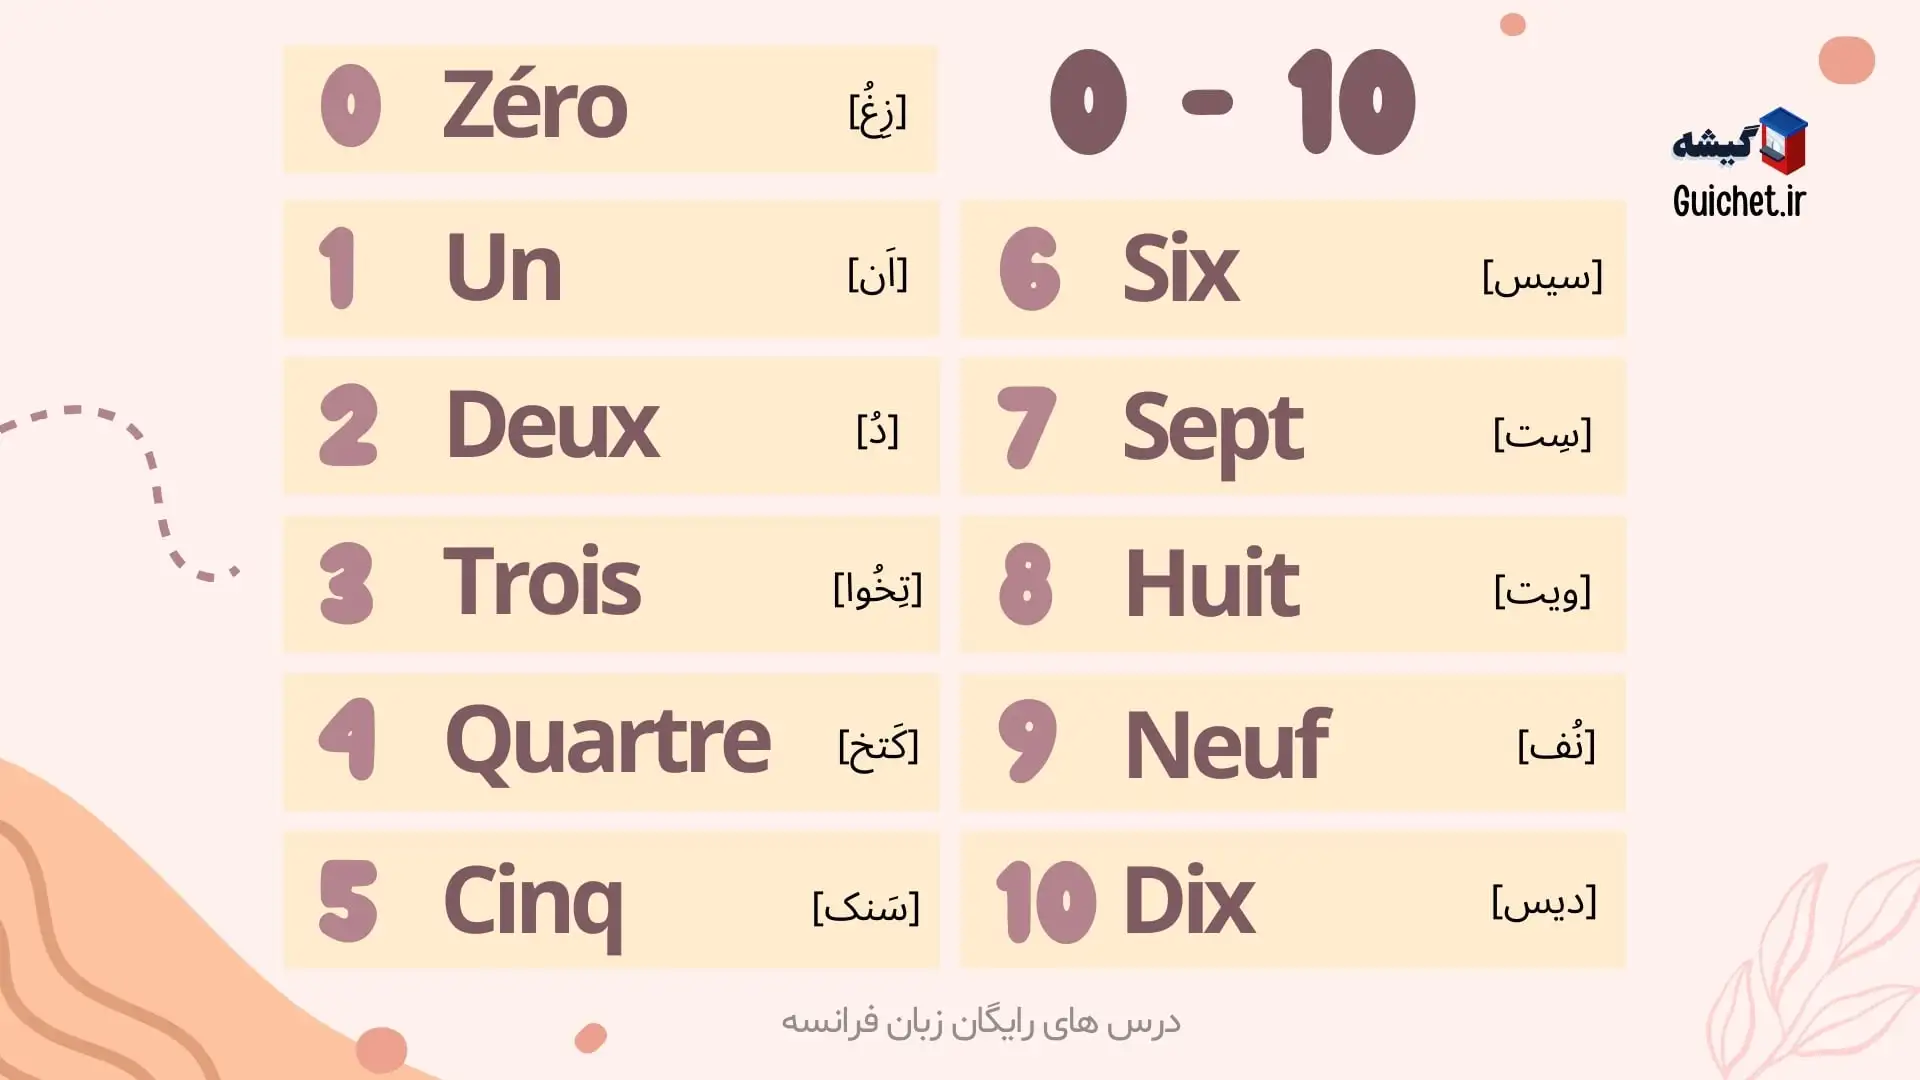 اعداد ۰ تا ۱۰ در زبان فرانسه